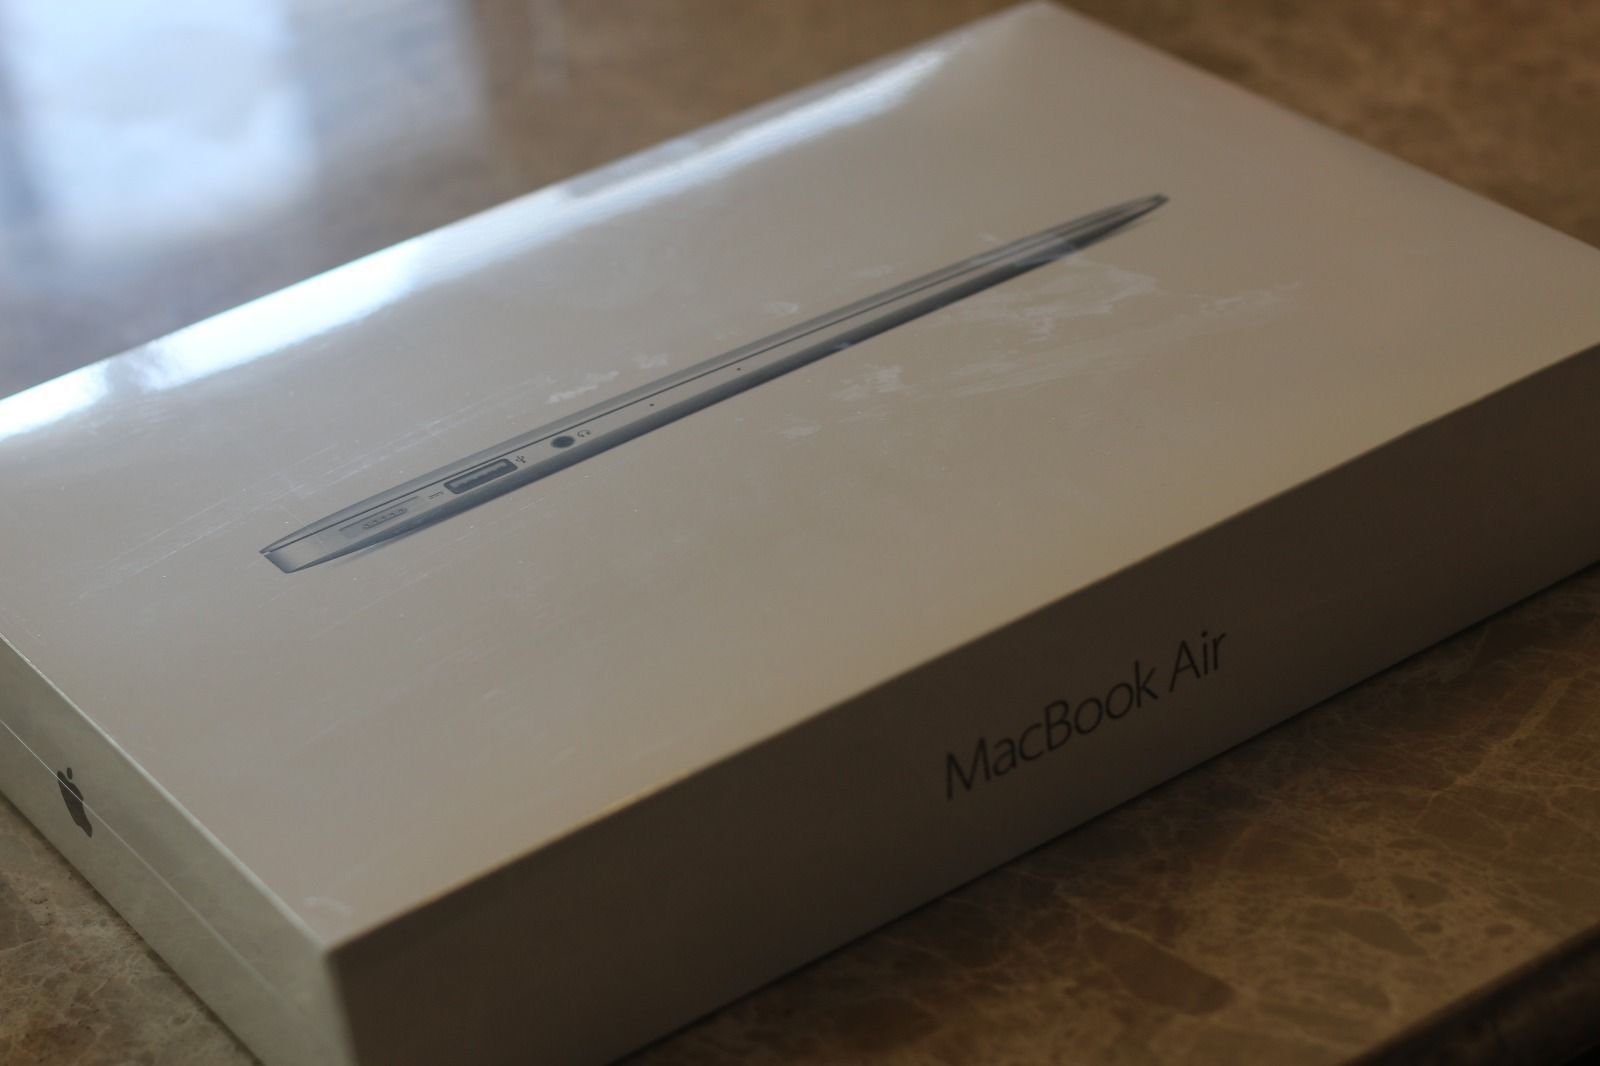 Apple Macbook Air Laptop